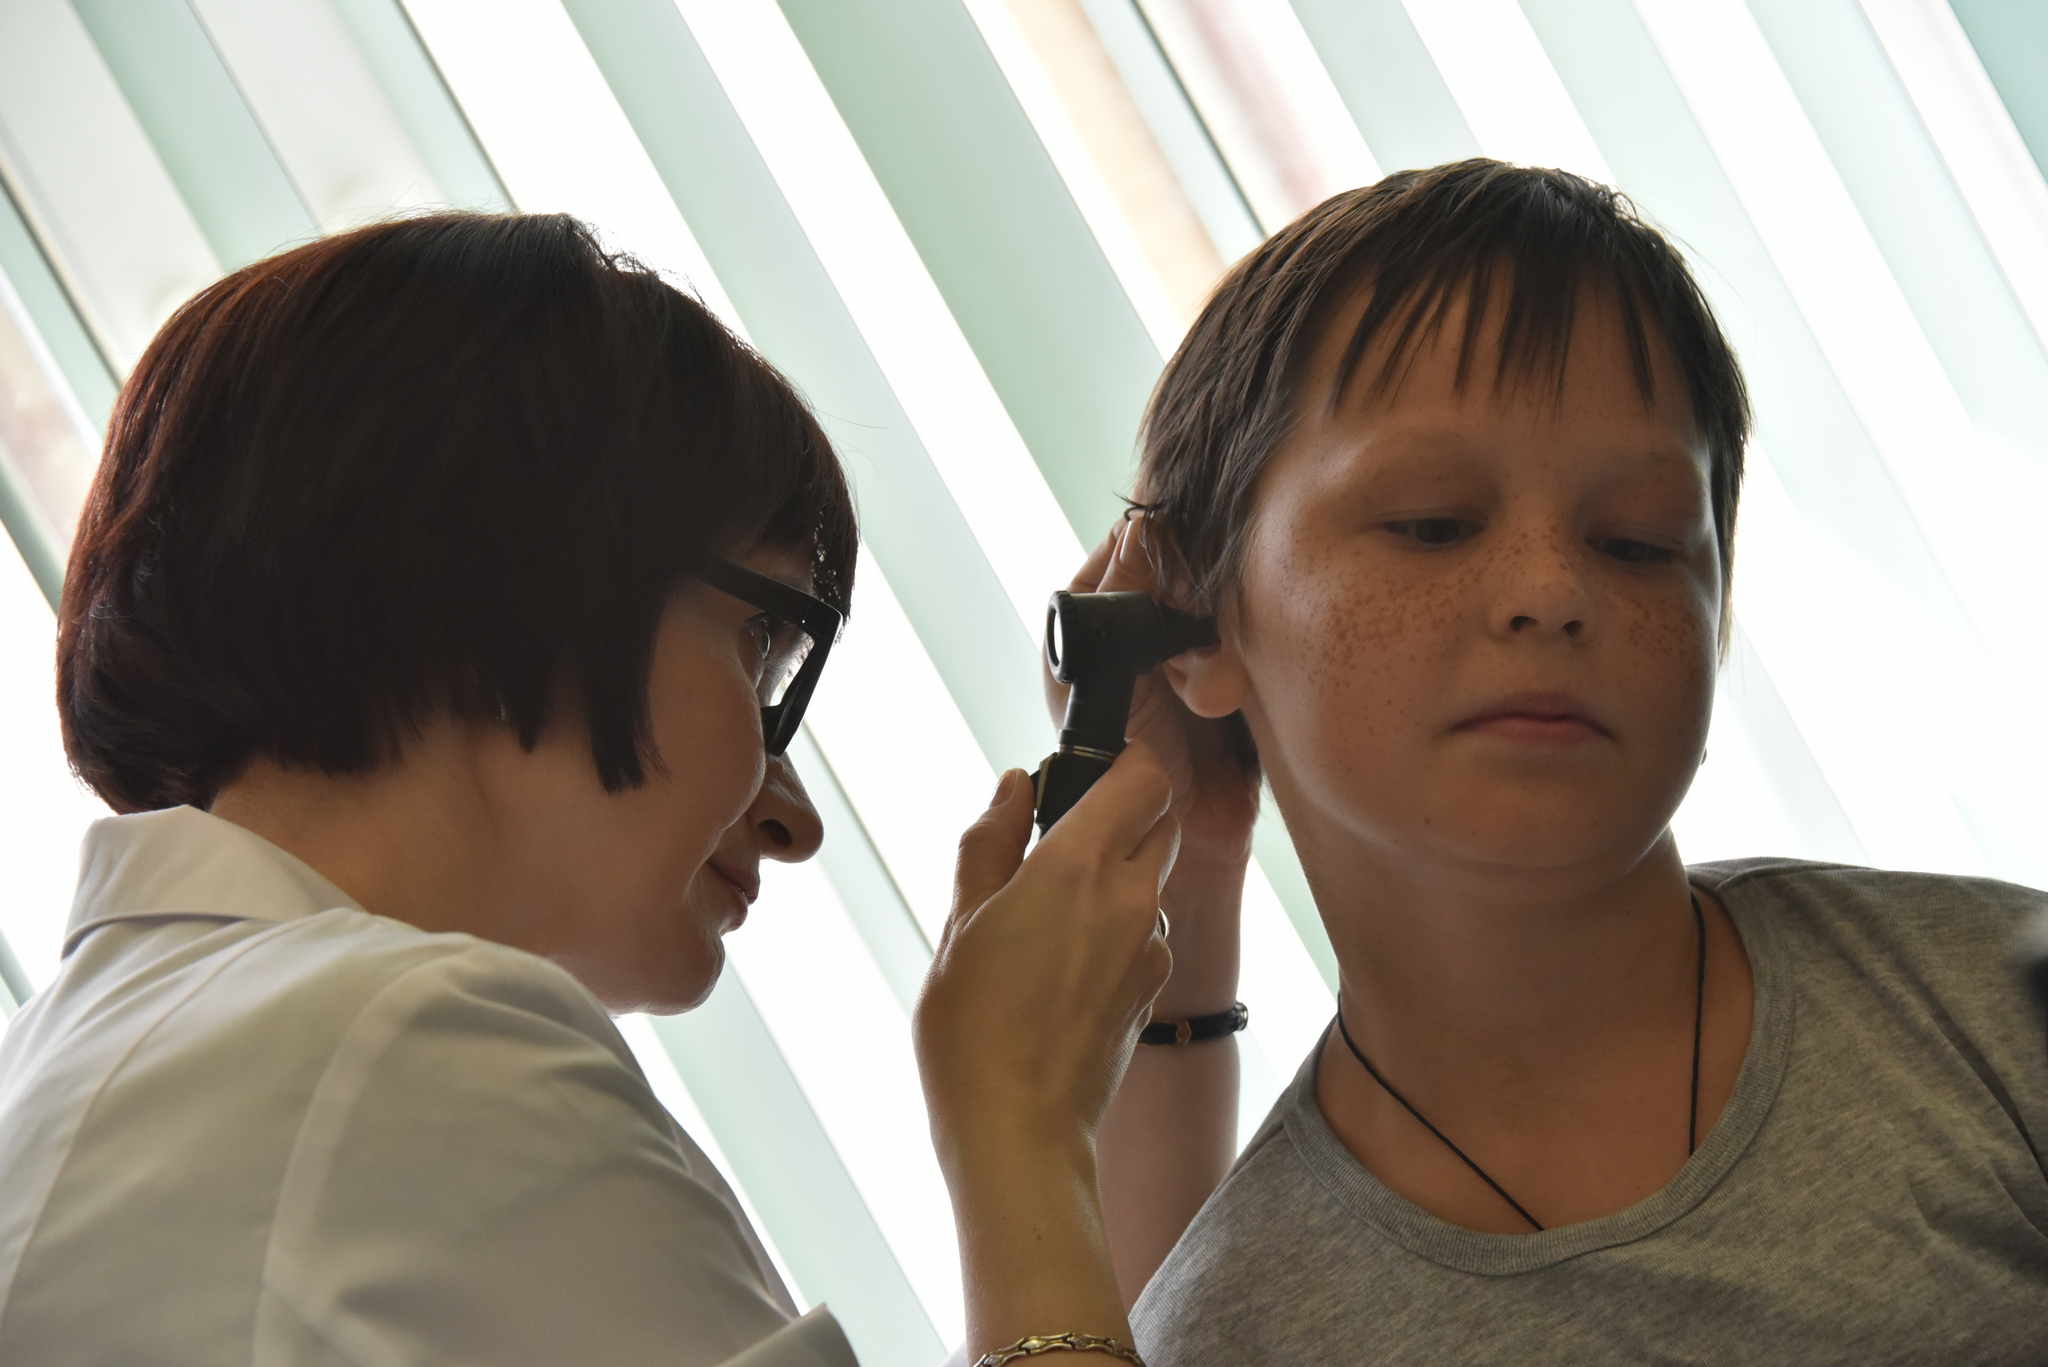 Школьники смогут получить справки в поликлиниках к началу учебы без очередей. Фото: архив, «Вечерняя Москва»